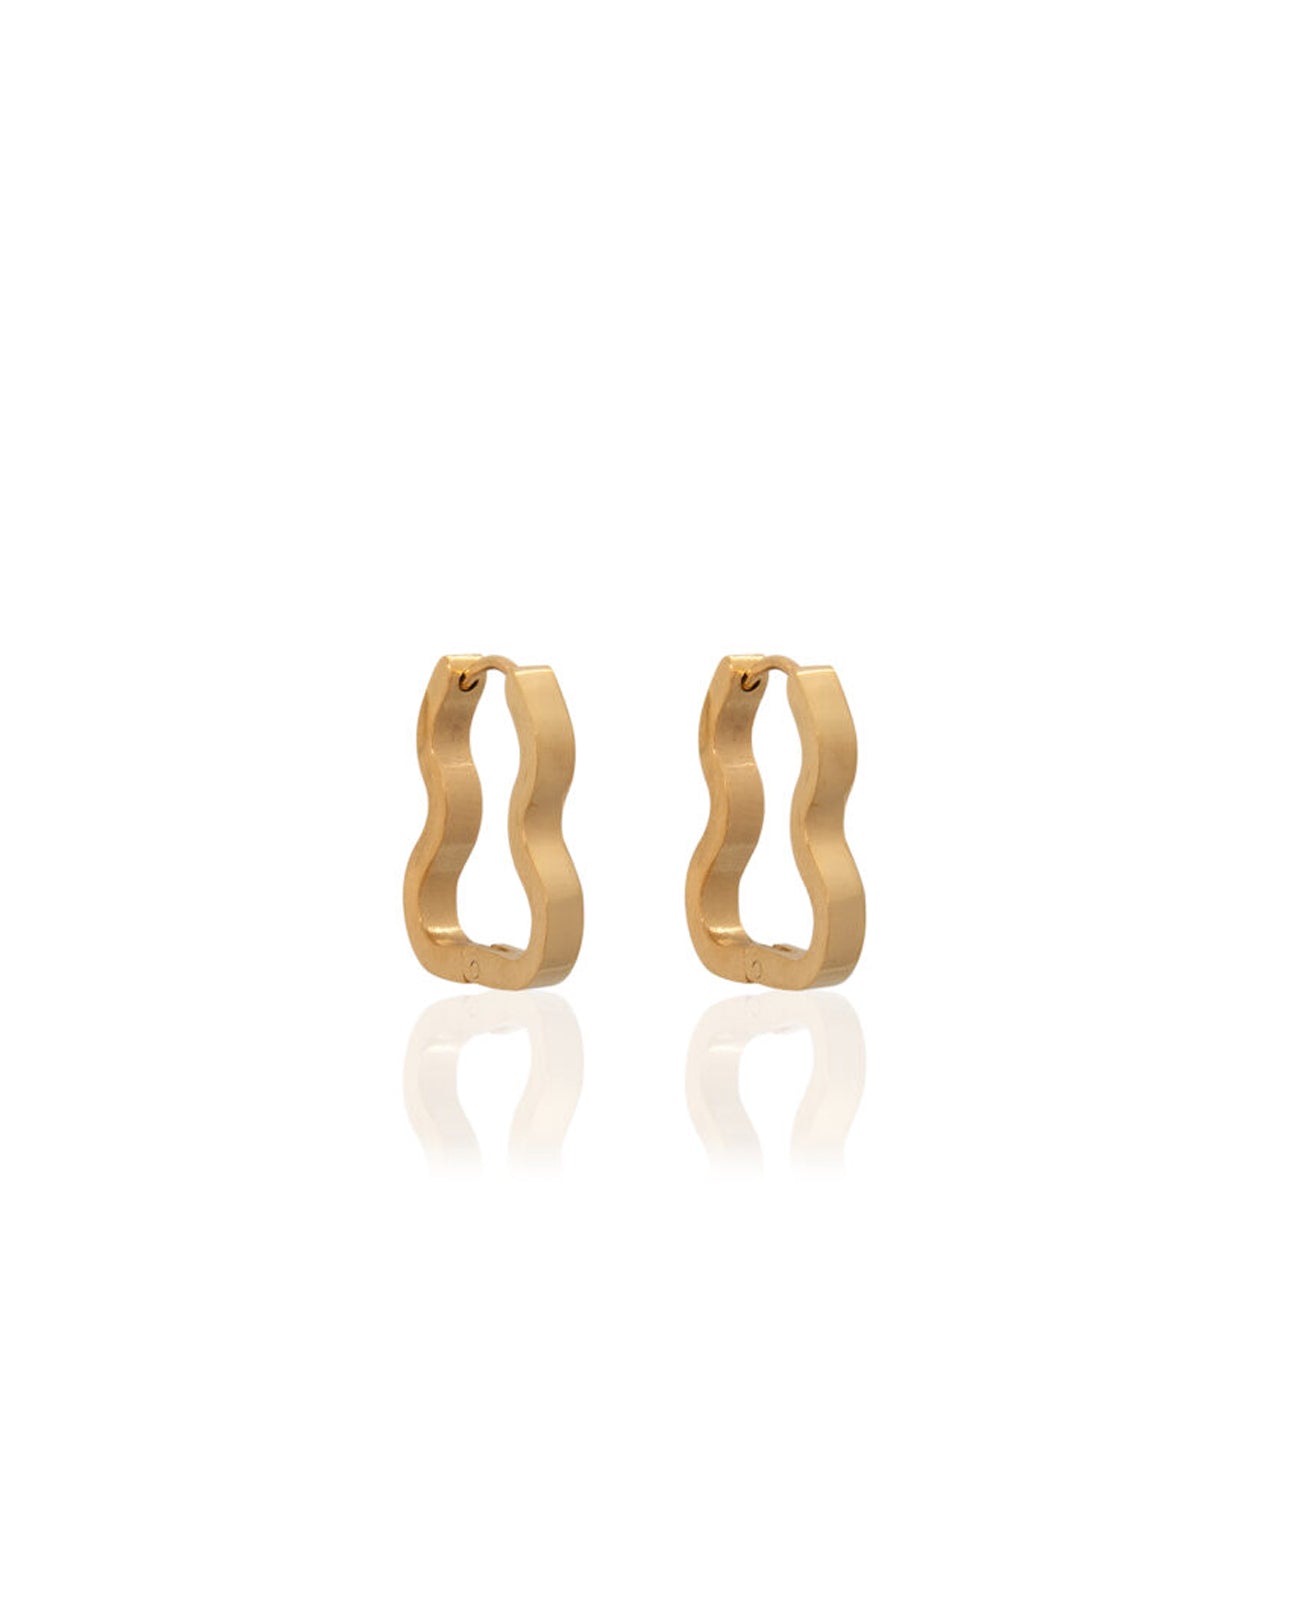 Arya Earrings in Gold